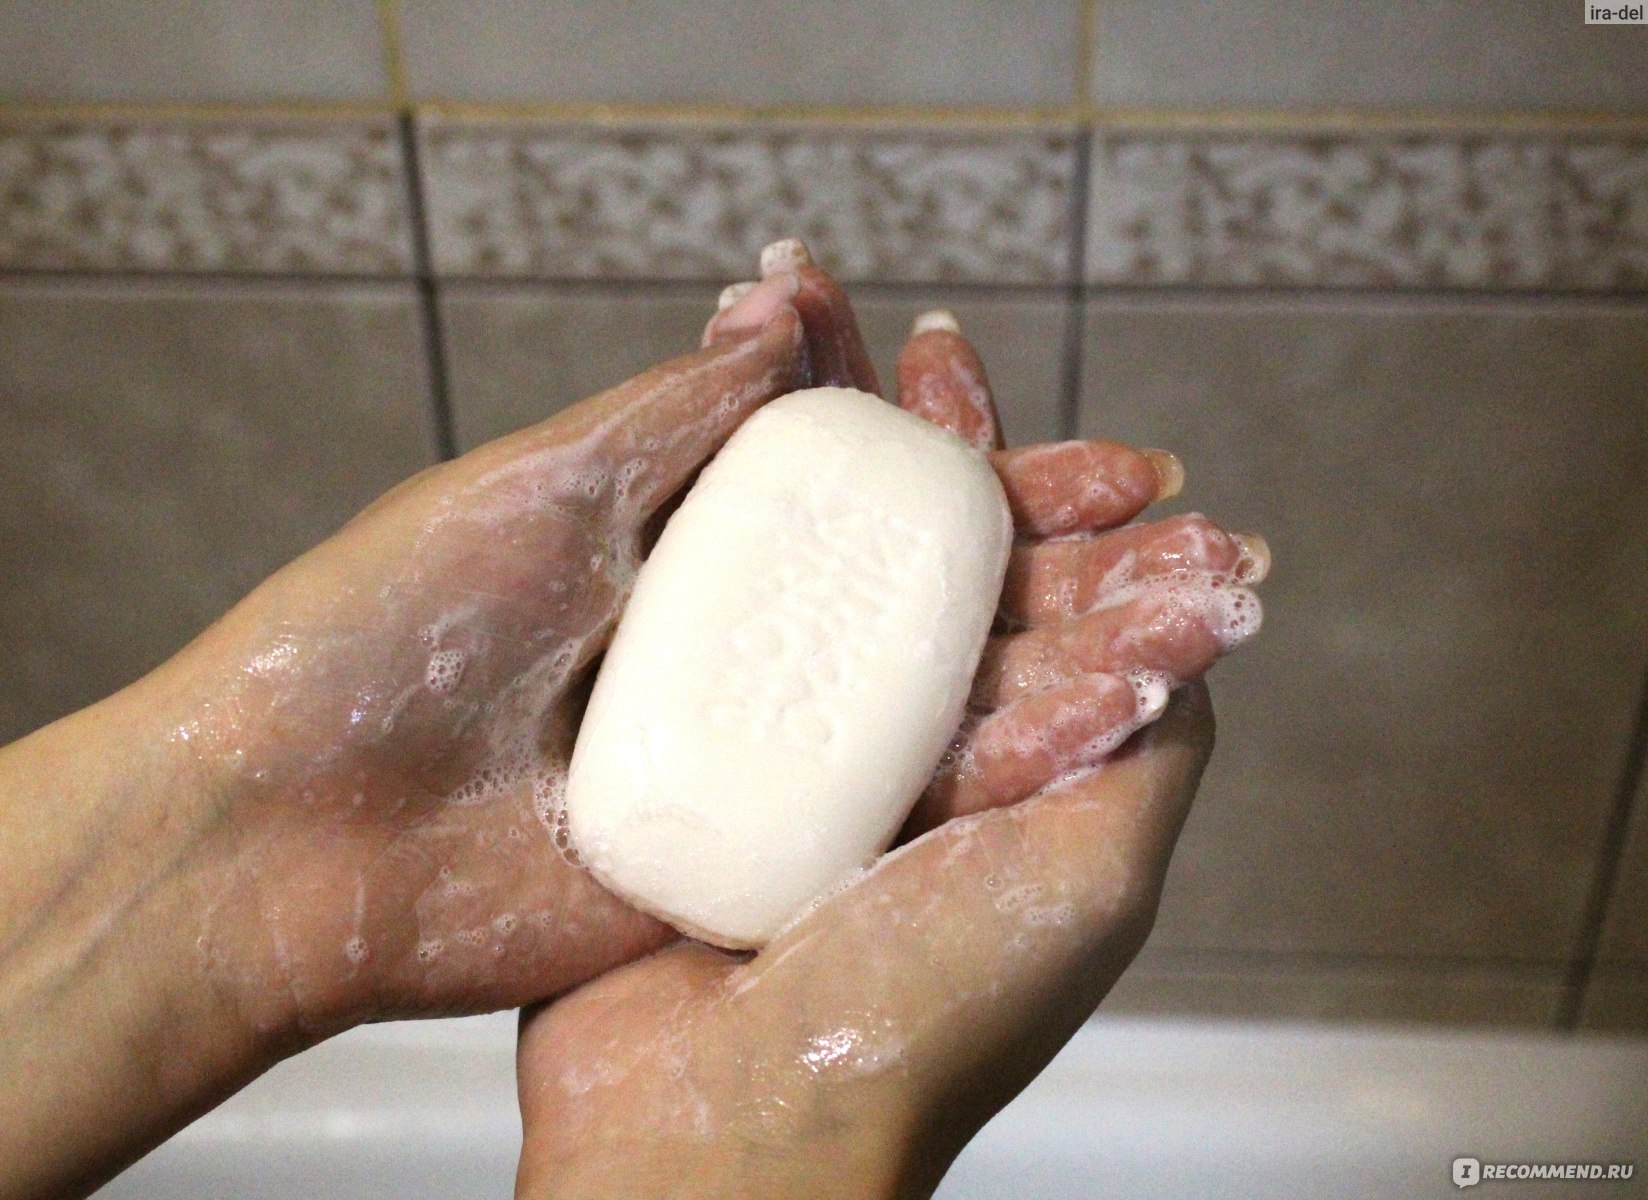 Мылом можно подмываться женщине. Каким мылом лучше подмываться. Подмываться детским мылом. Мыло с которым подмываются. Надо ли подмываться мылом?.